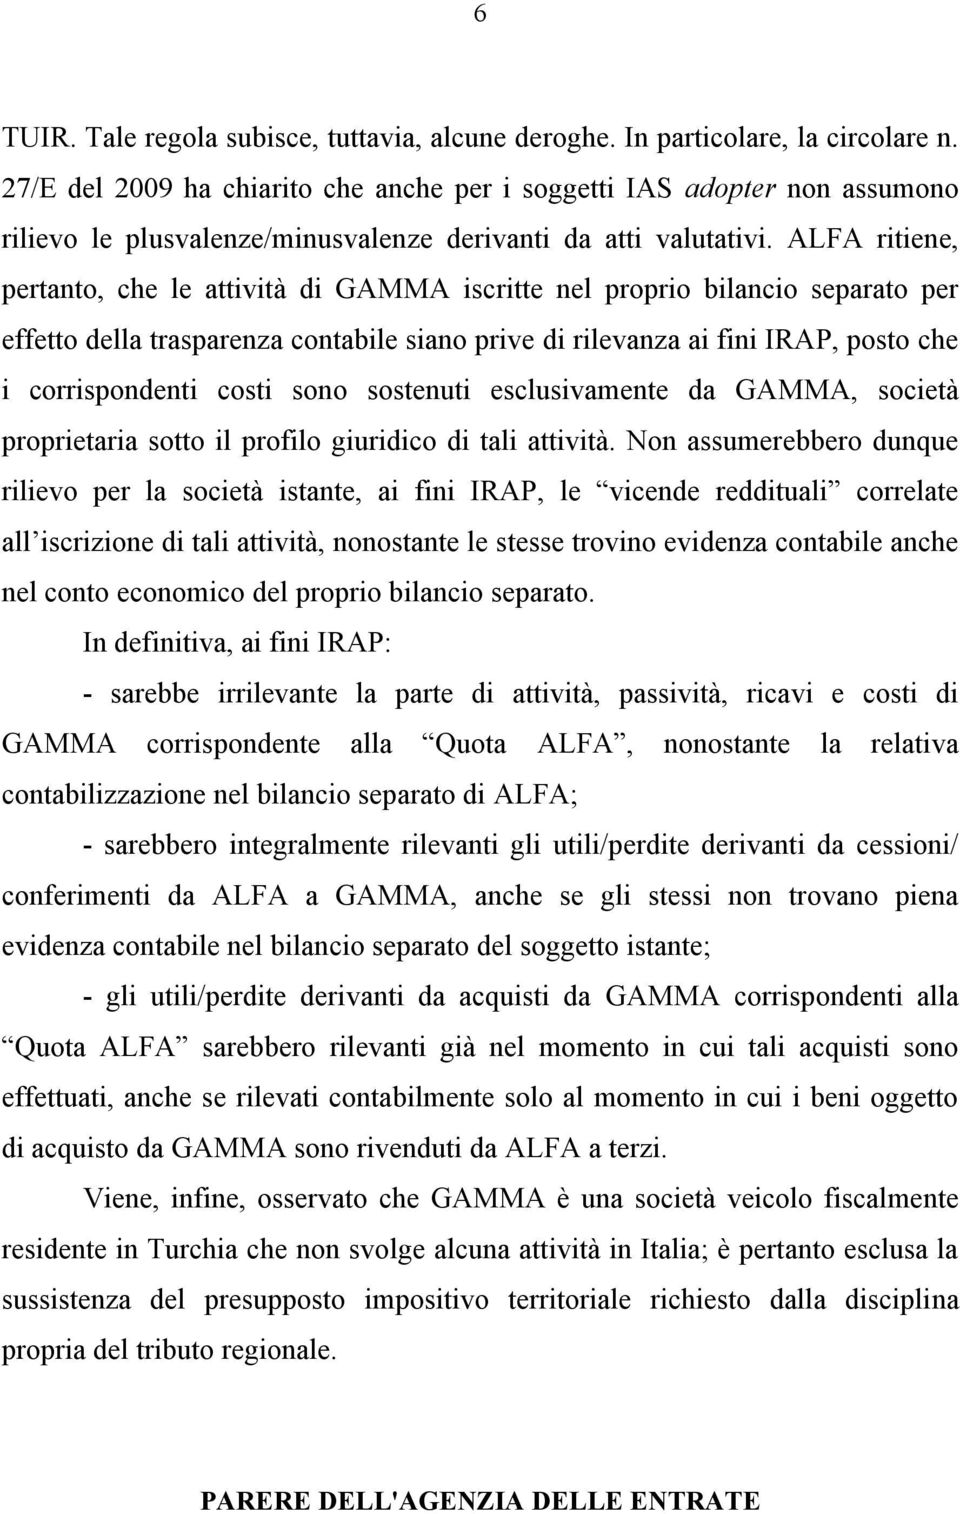 ALFA ritiene, pertanto, che le attività di GAMMA iscritte nel proprio bilancio separato per effetto della trasparenza contabile siano prive di rilevanza ai fini IRAP, posto che i corrispondenti costi